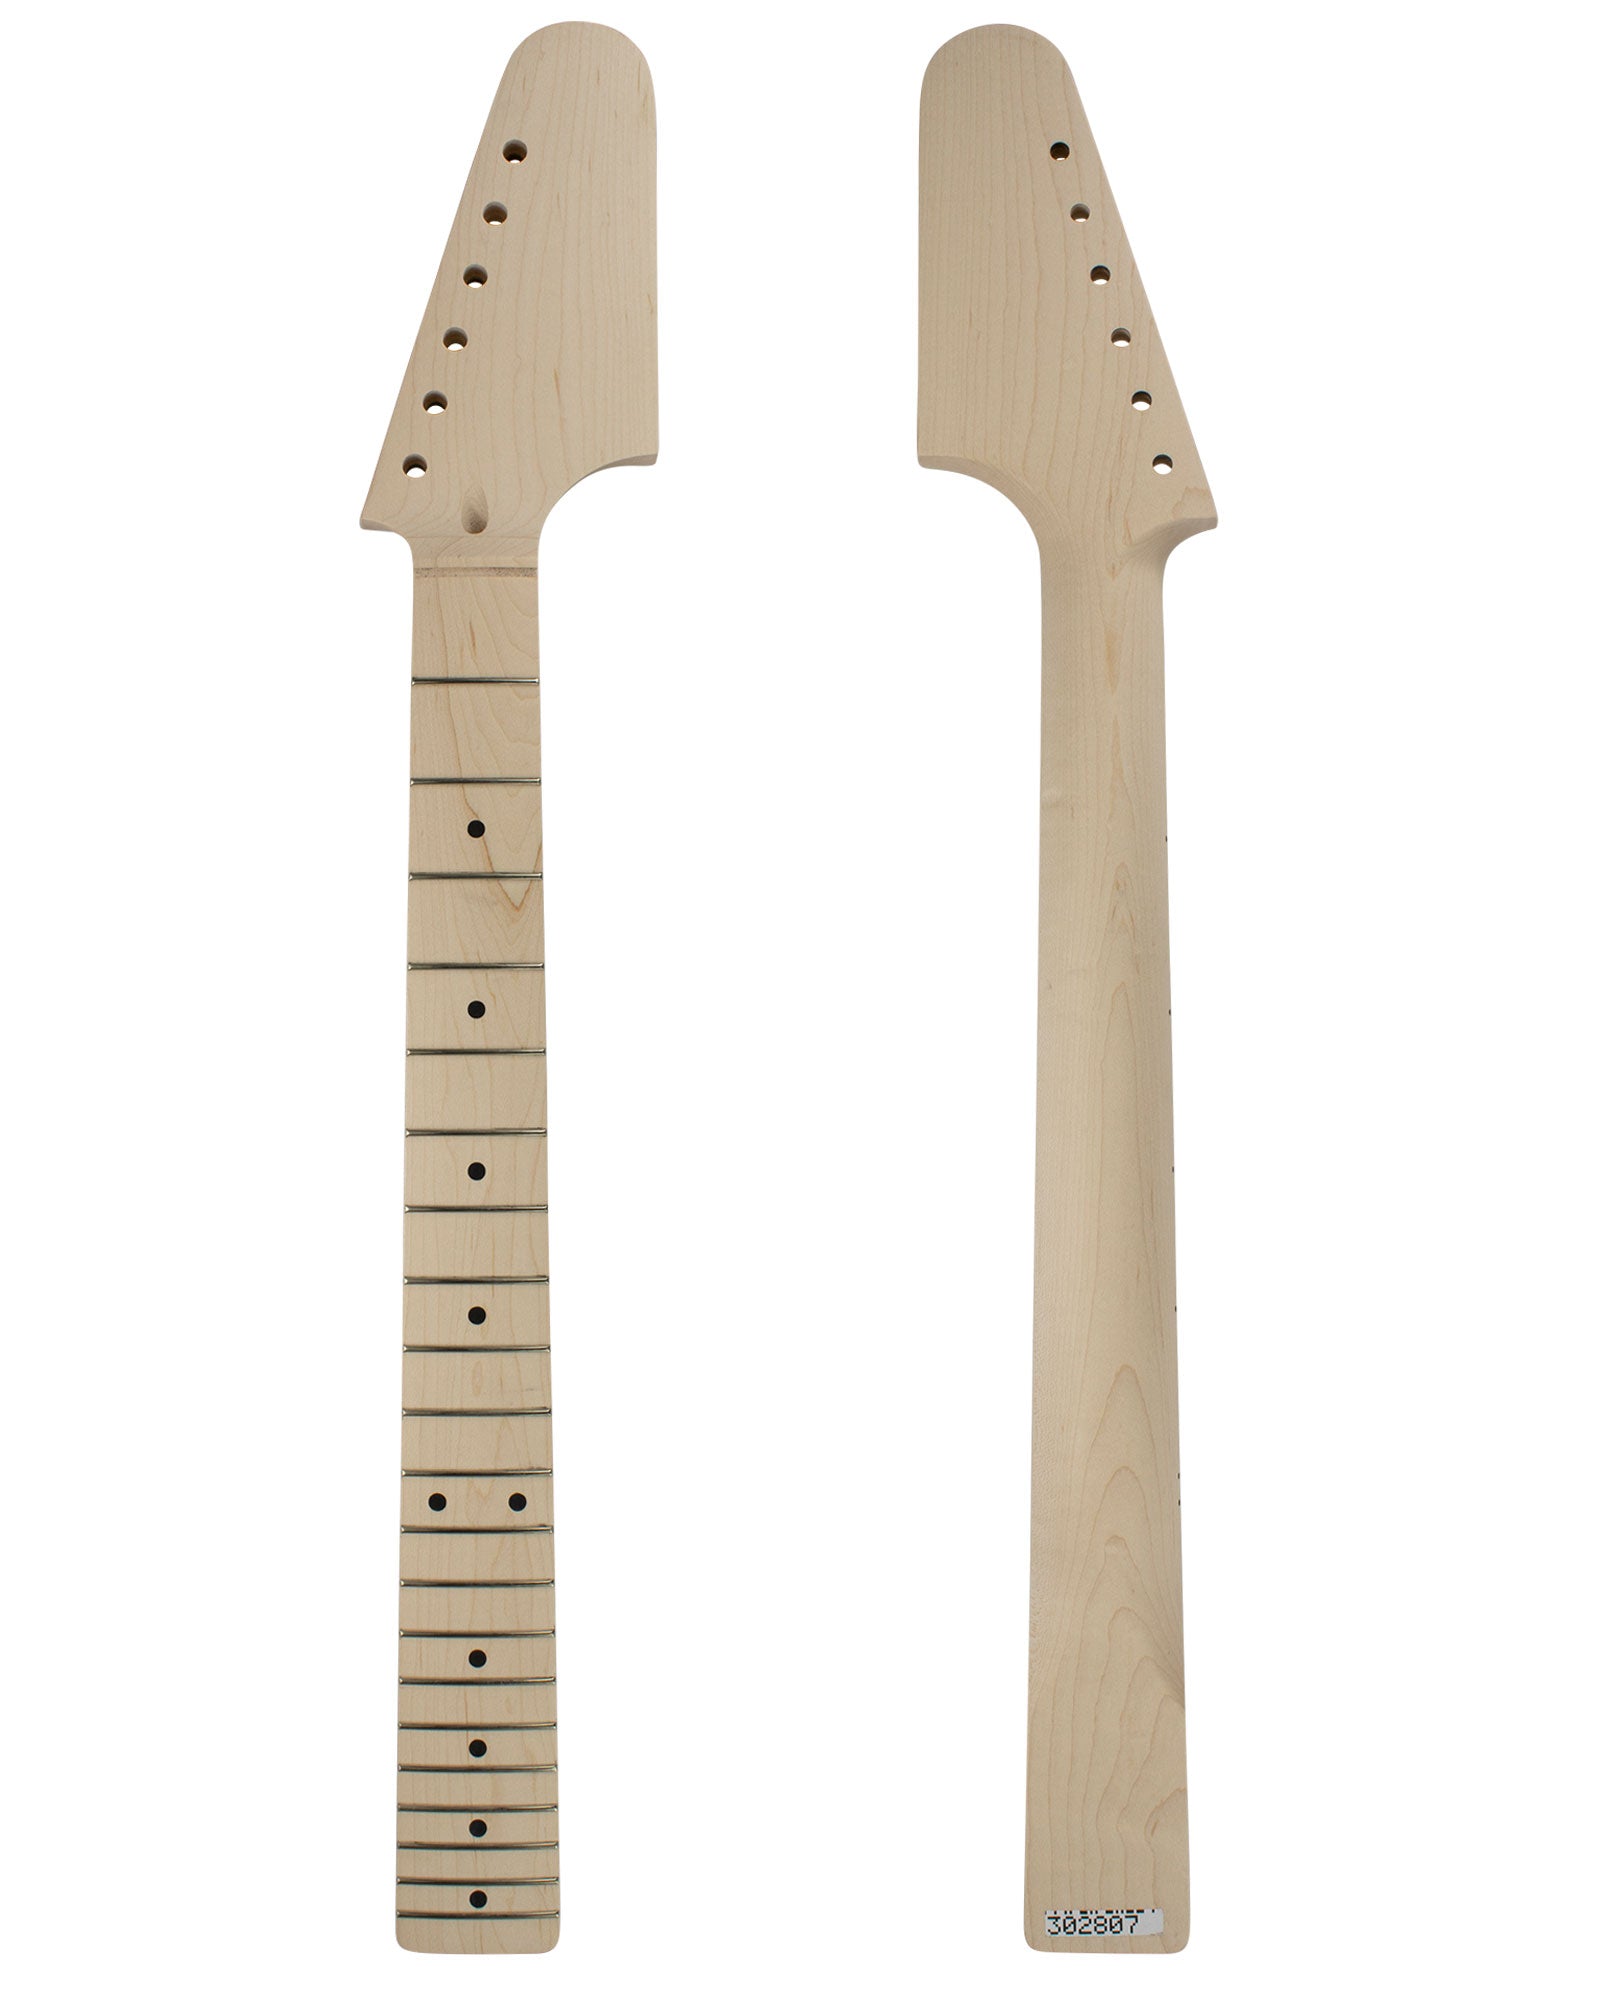 TC Guitar Neck 302807-Guitar Neck - In Stock-Guitarbuild